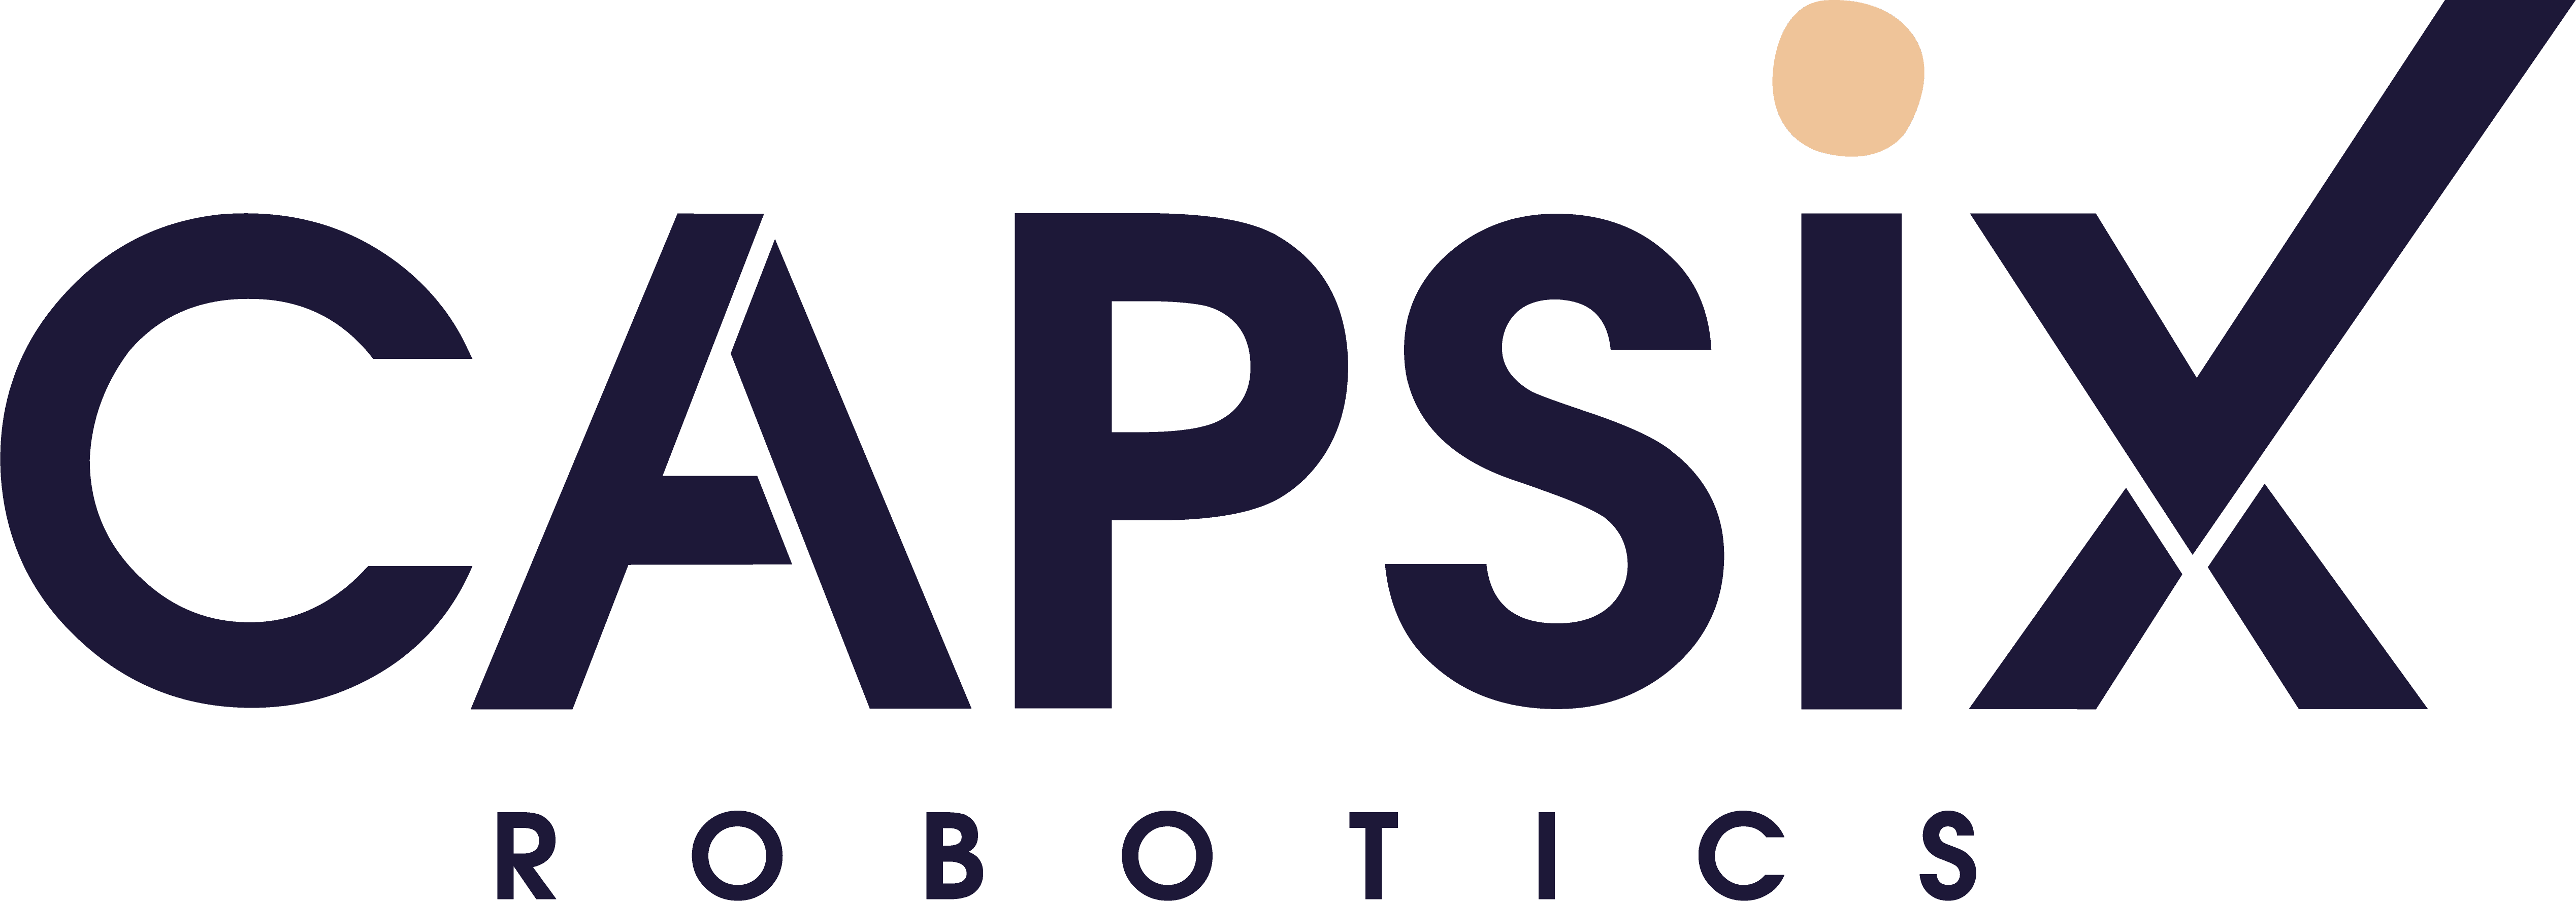 Capsix Robotics